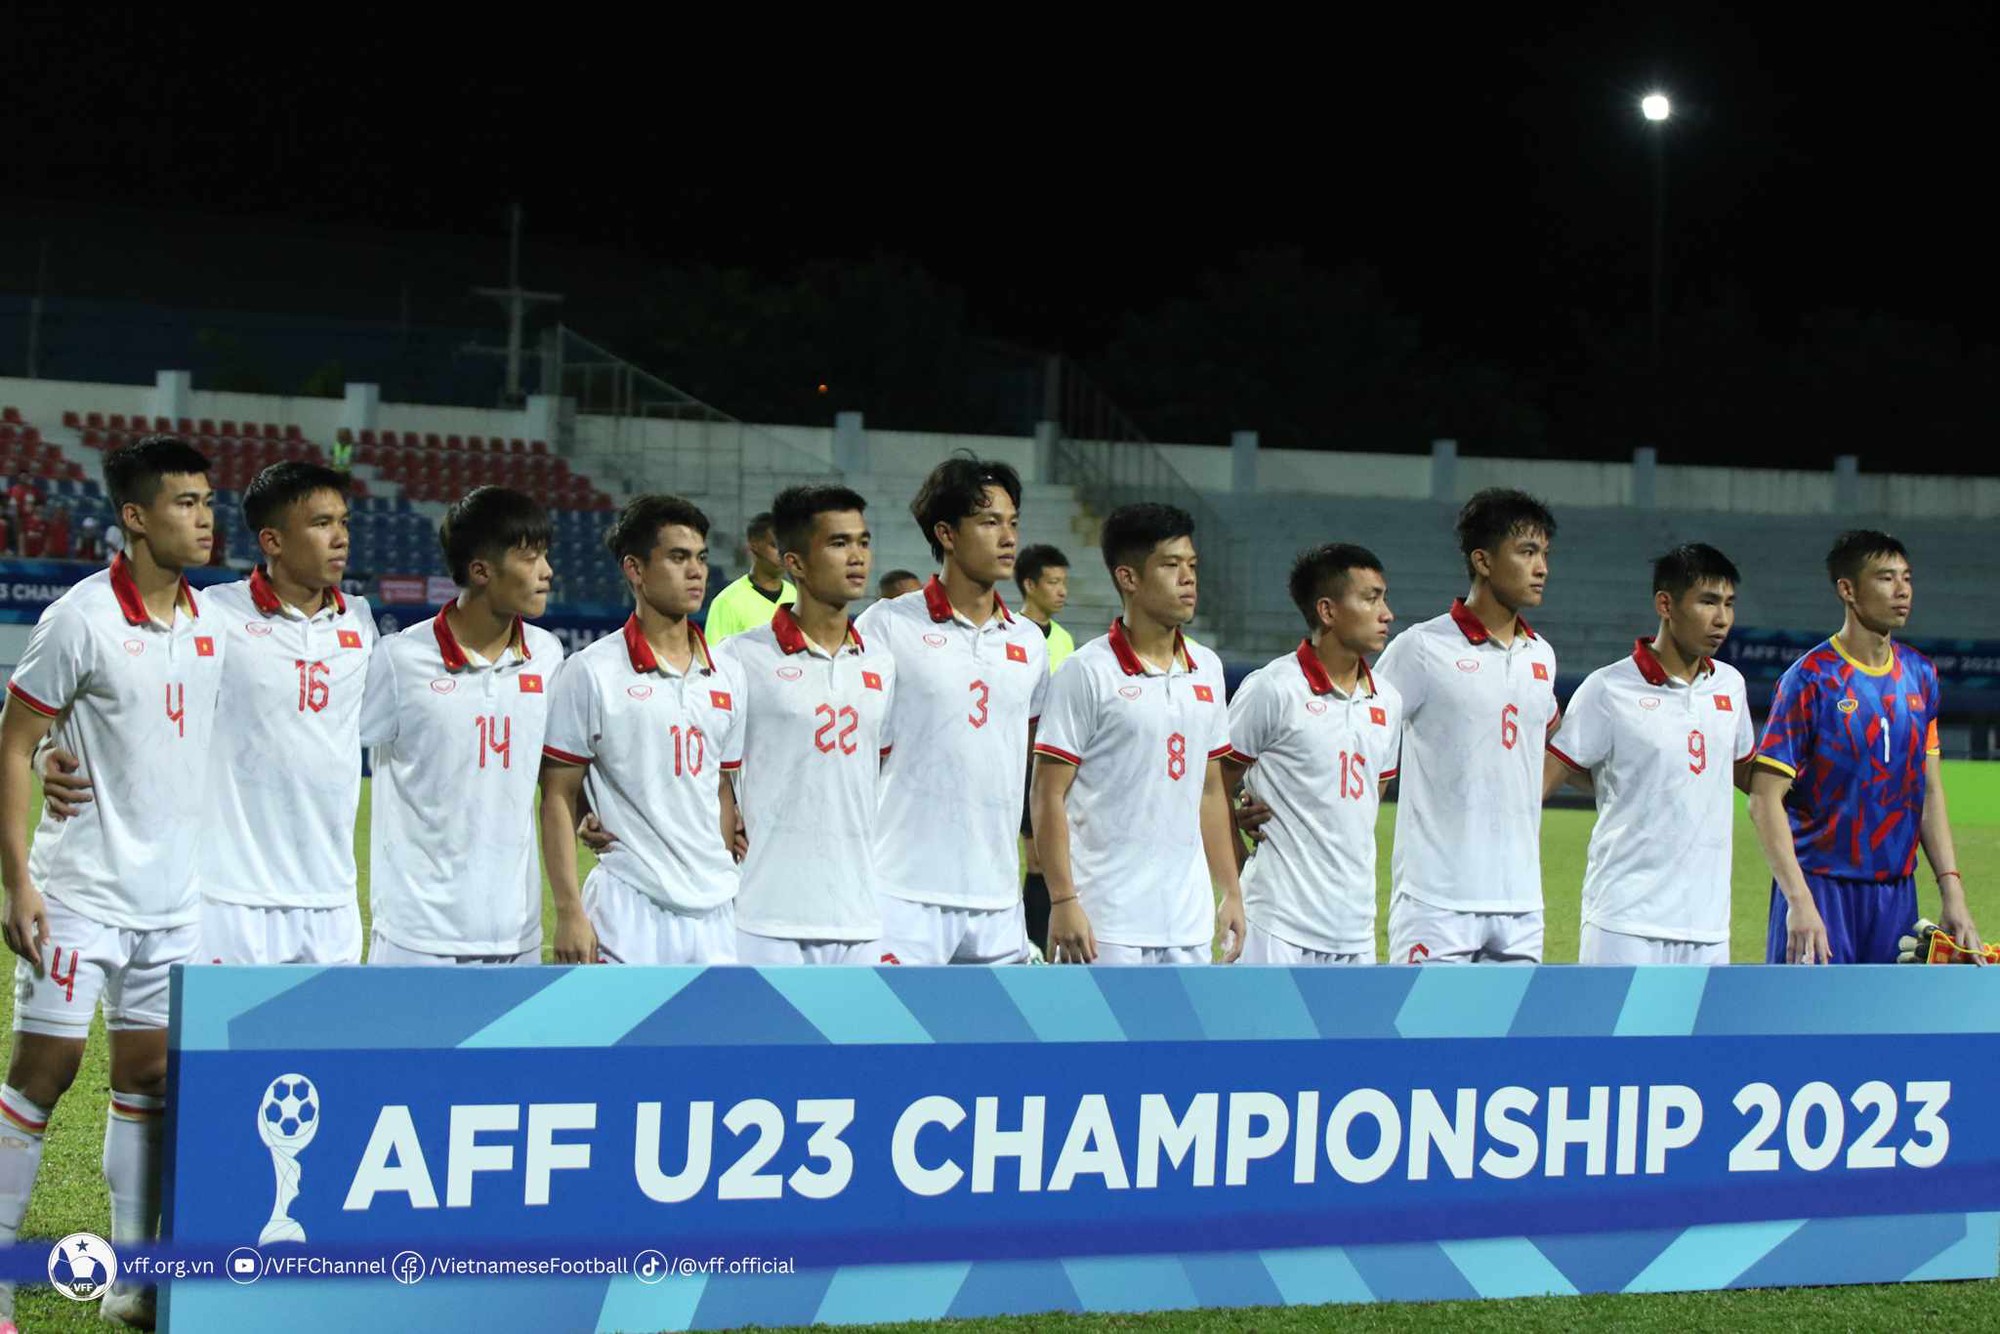 CĐV Đông Nam Á thán phục chức vô địch của U23 Việt Nam - Ảnh 1.